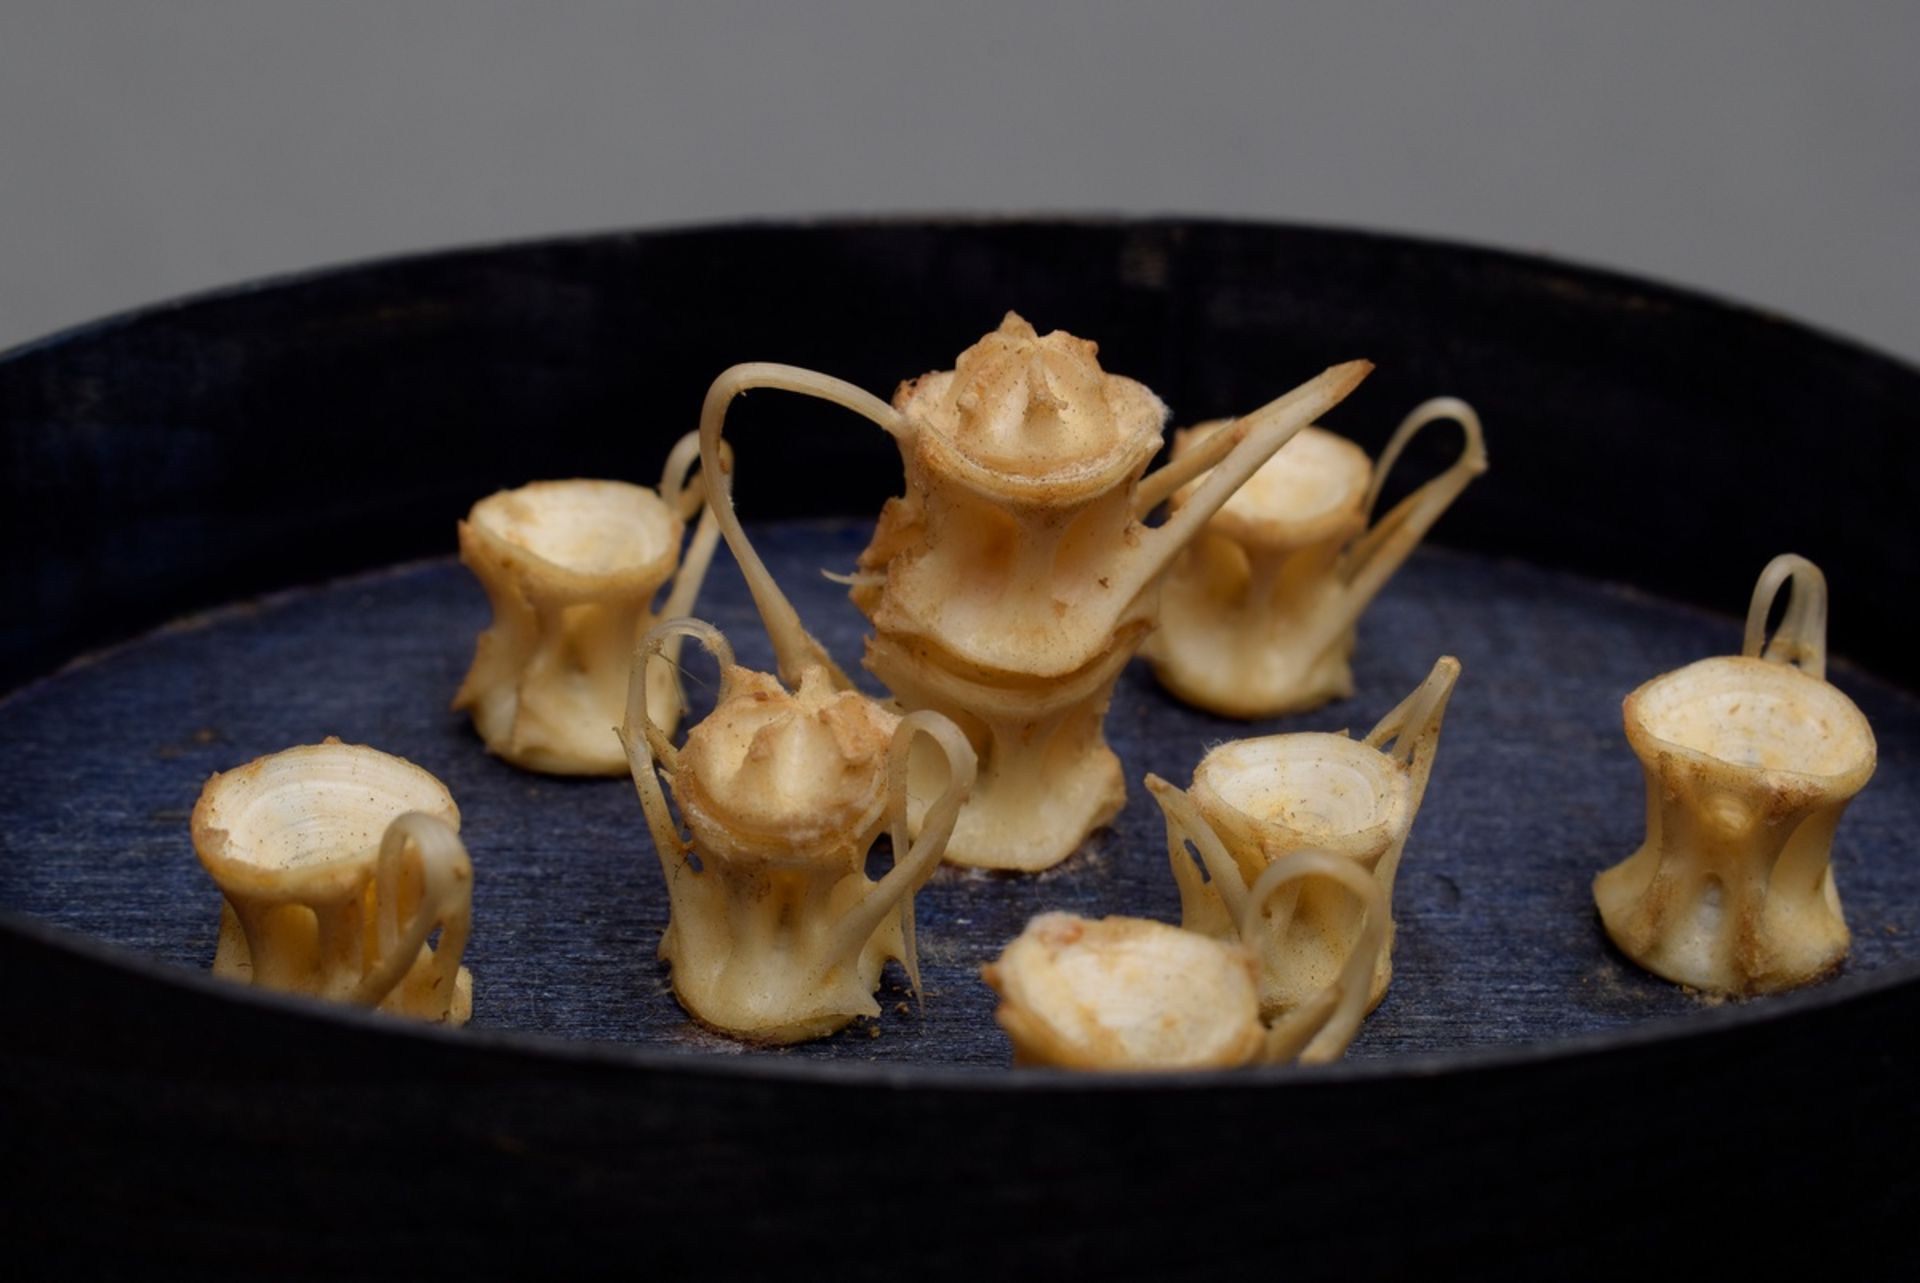 Miniatur Teeservice aus Hai-Wirbelknochen, in Spanschachtel montiert, 3x11x7,5cm (mit Schachtel), l - Bild 2 aus 2